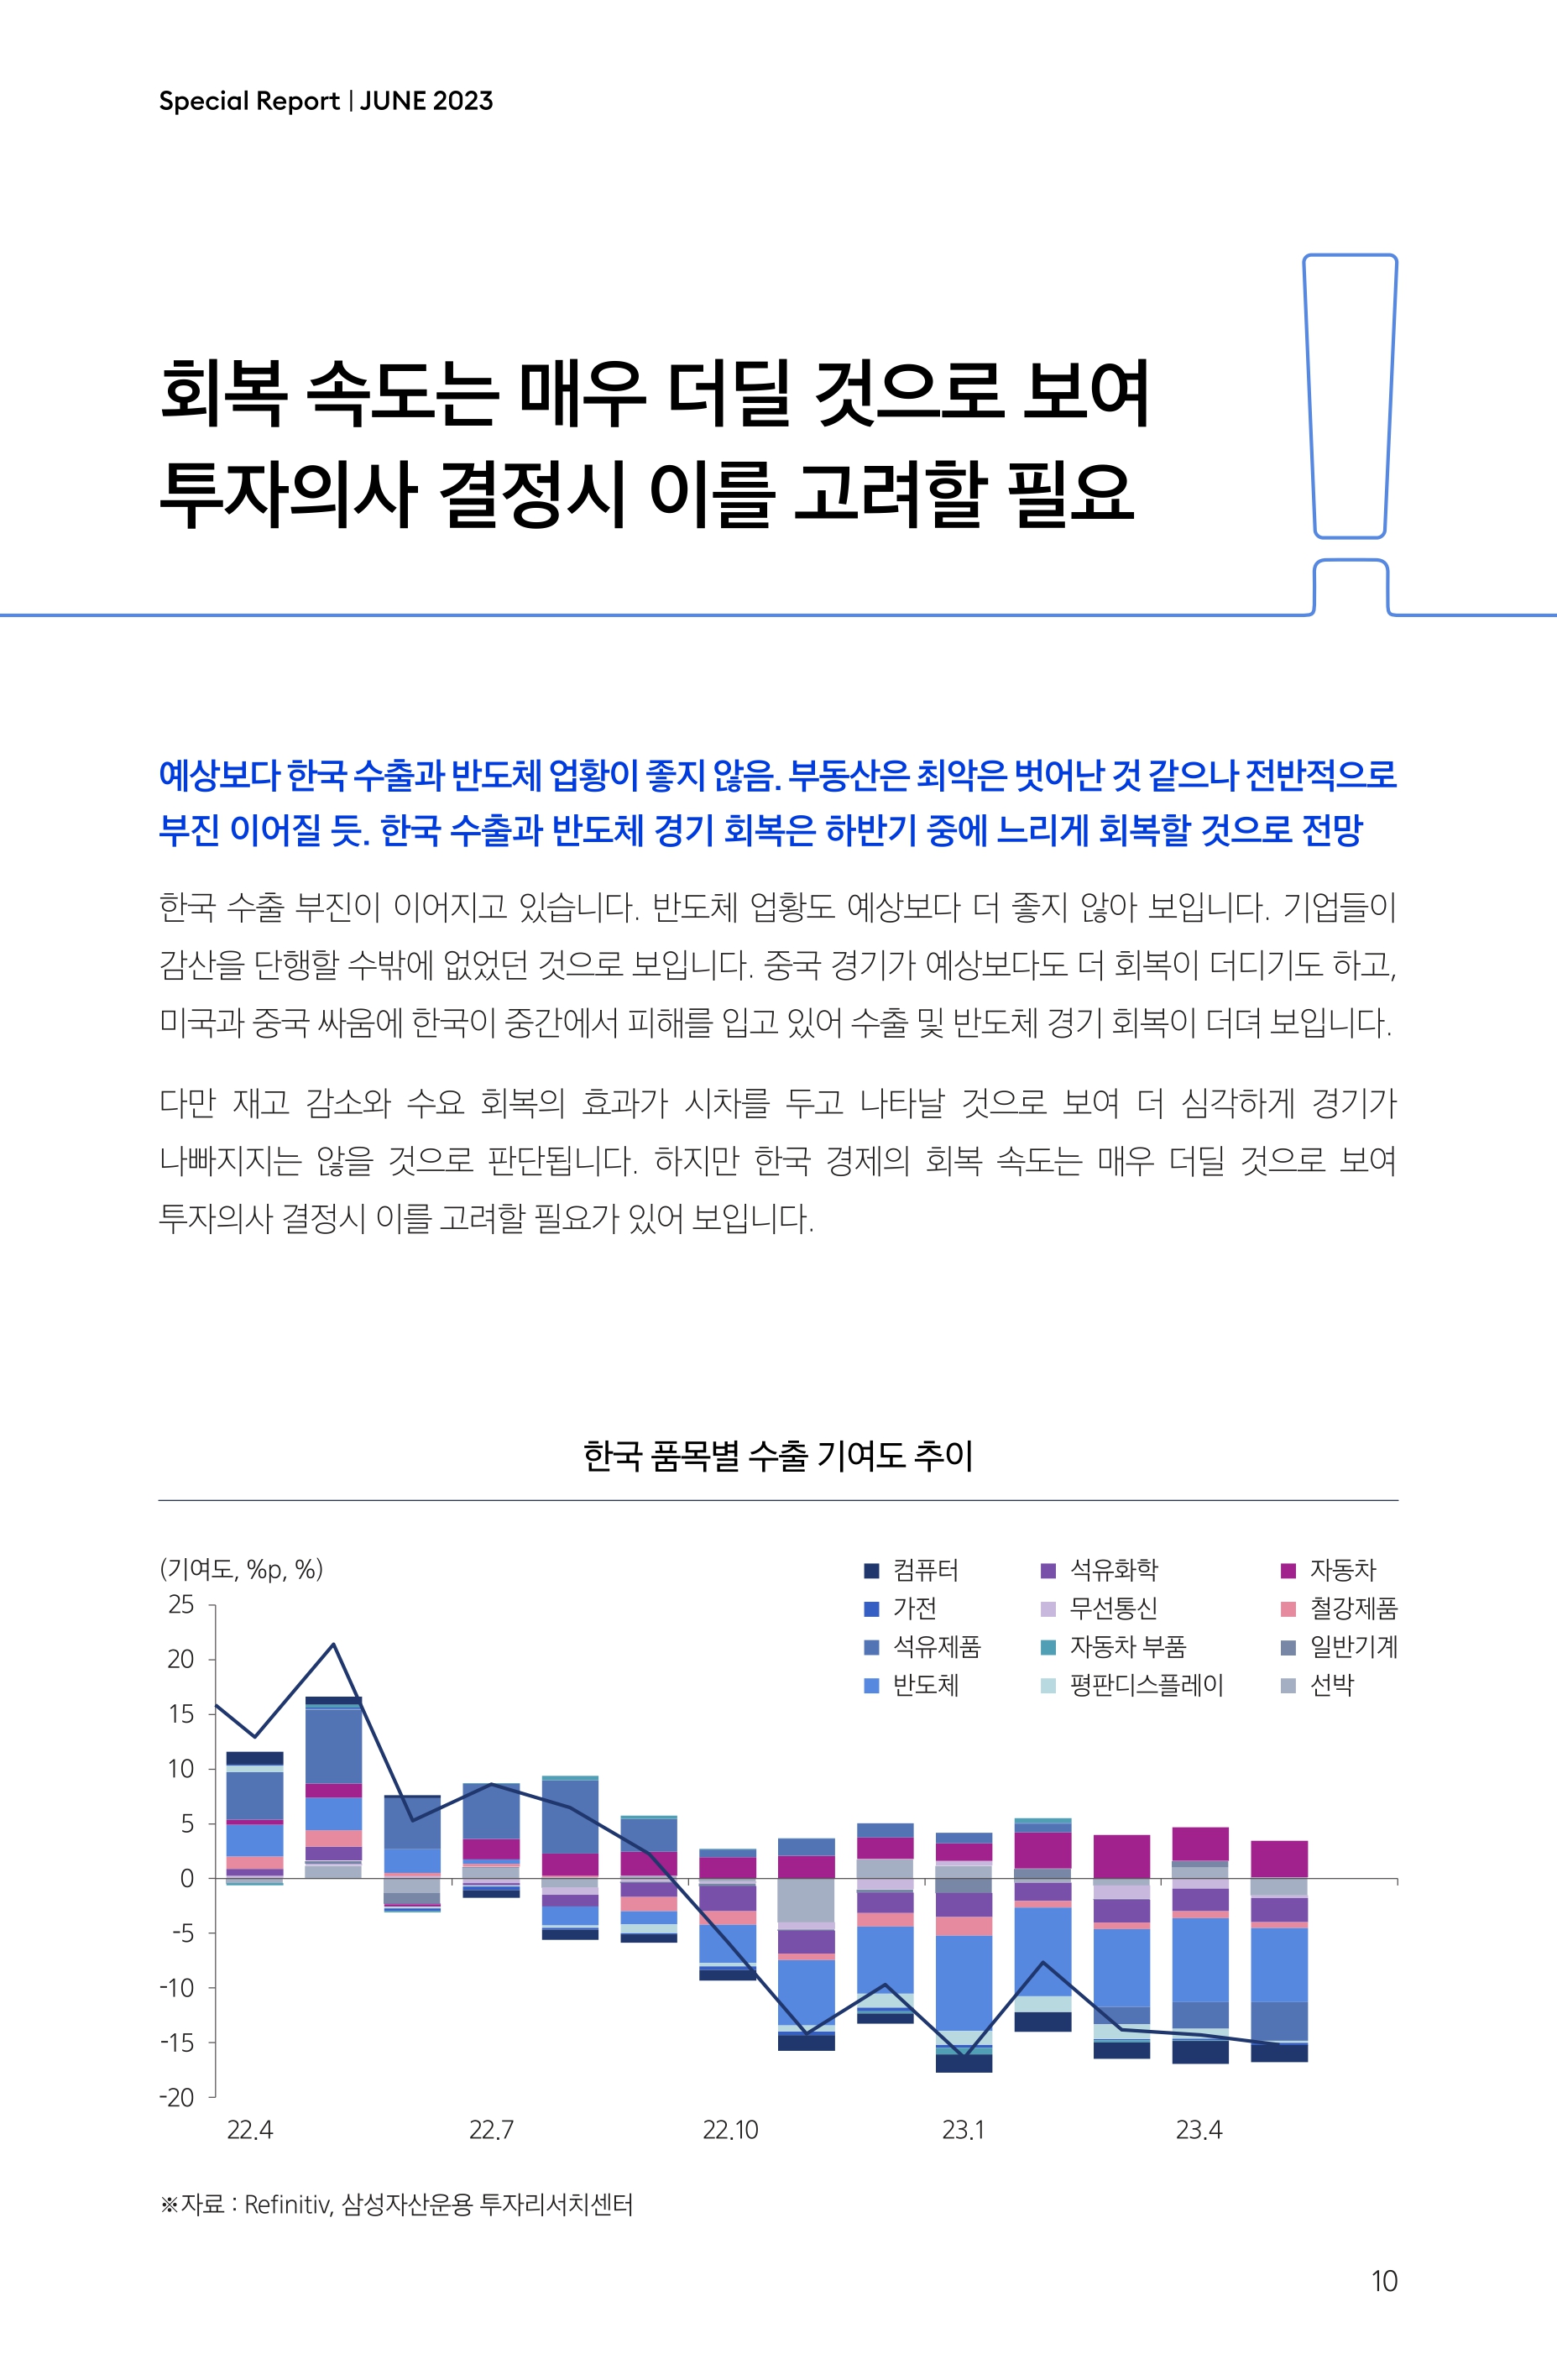 Samsung Global Market Outlook(낱장)_202306_page-0010.jpg